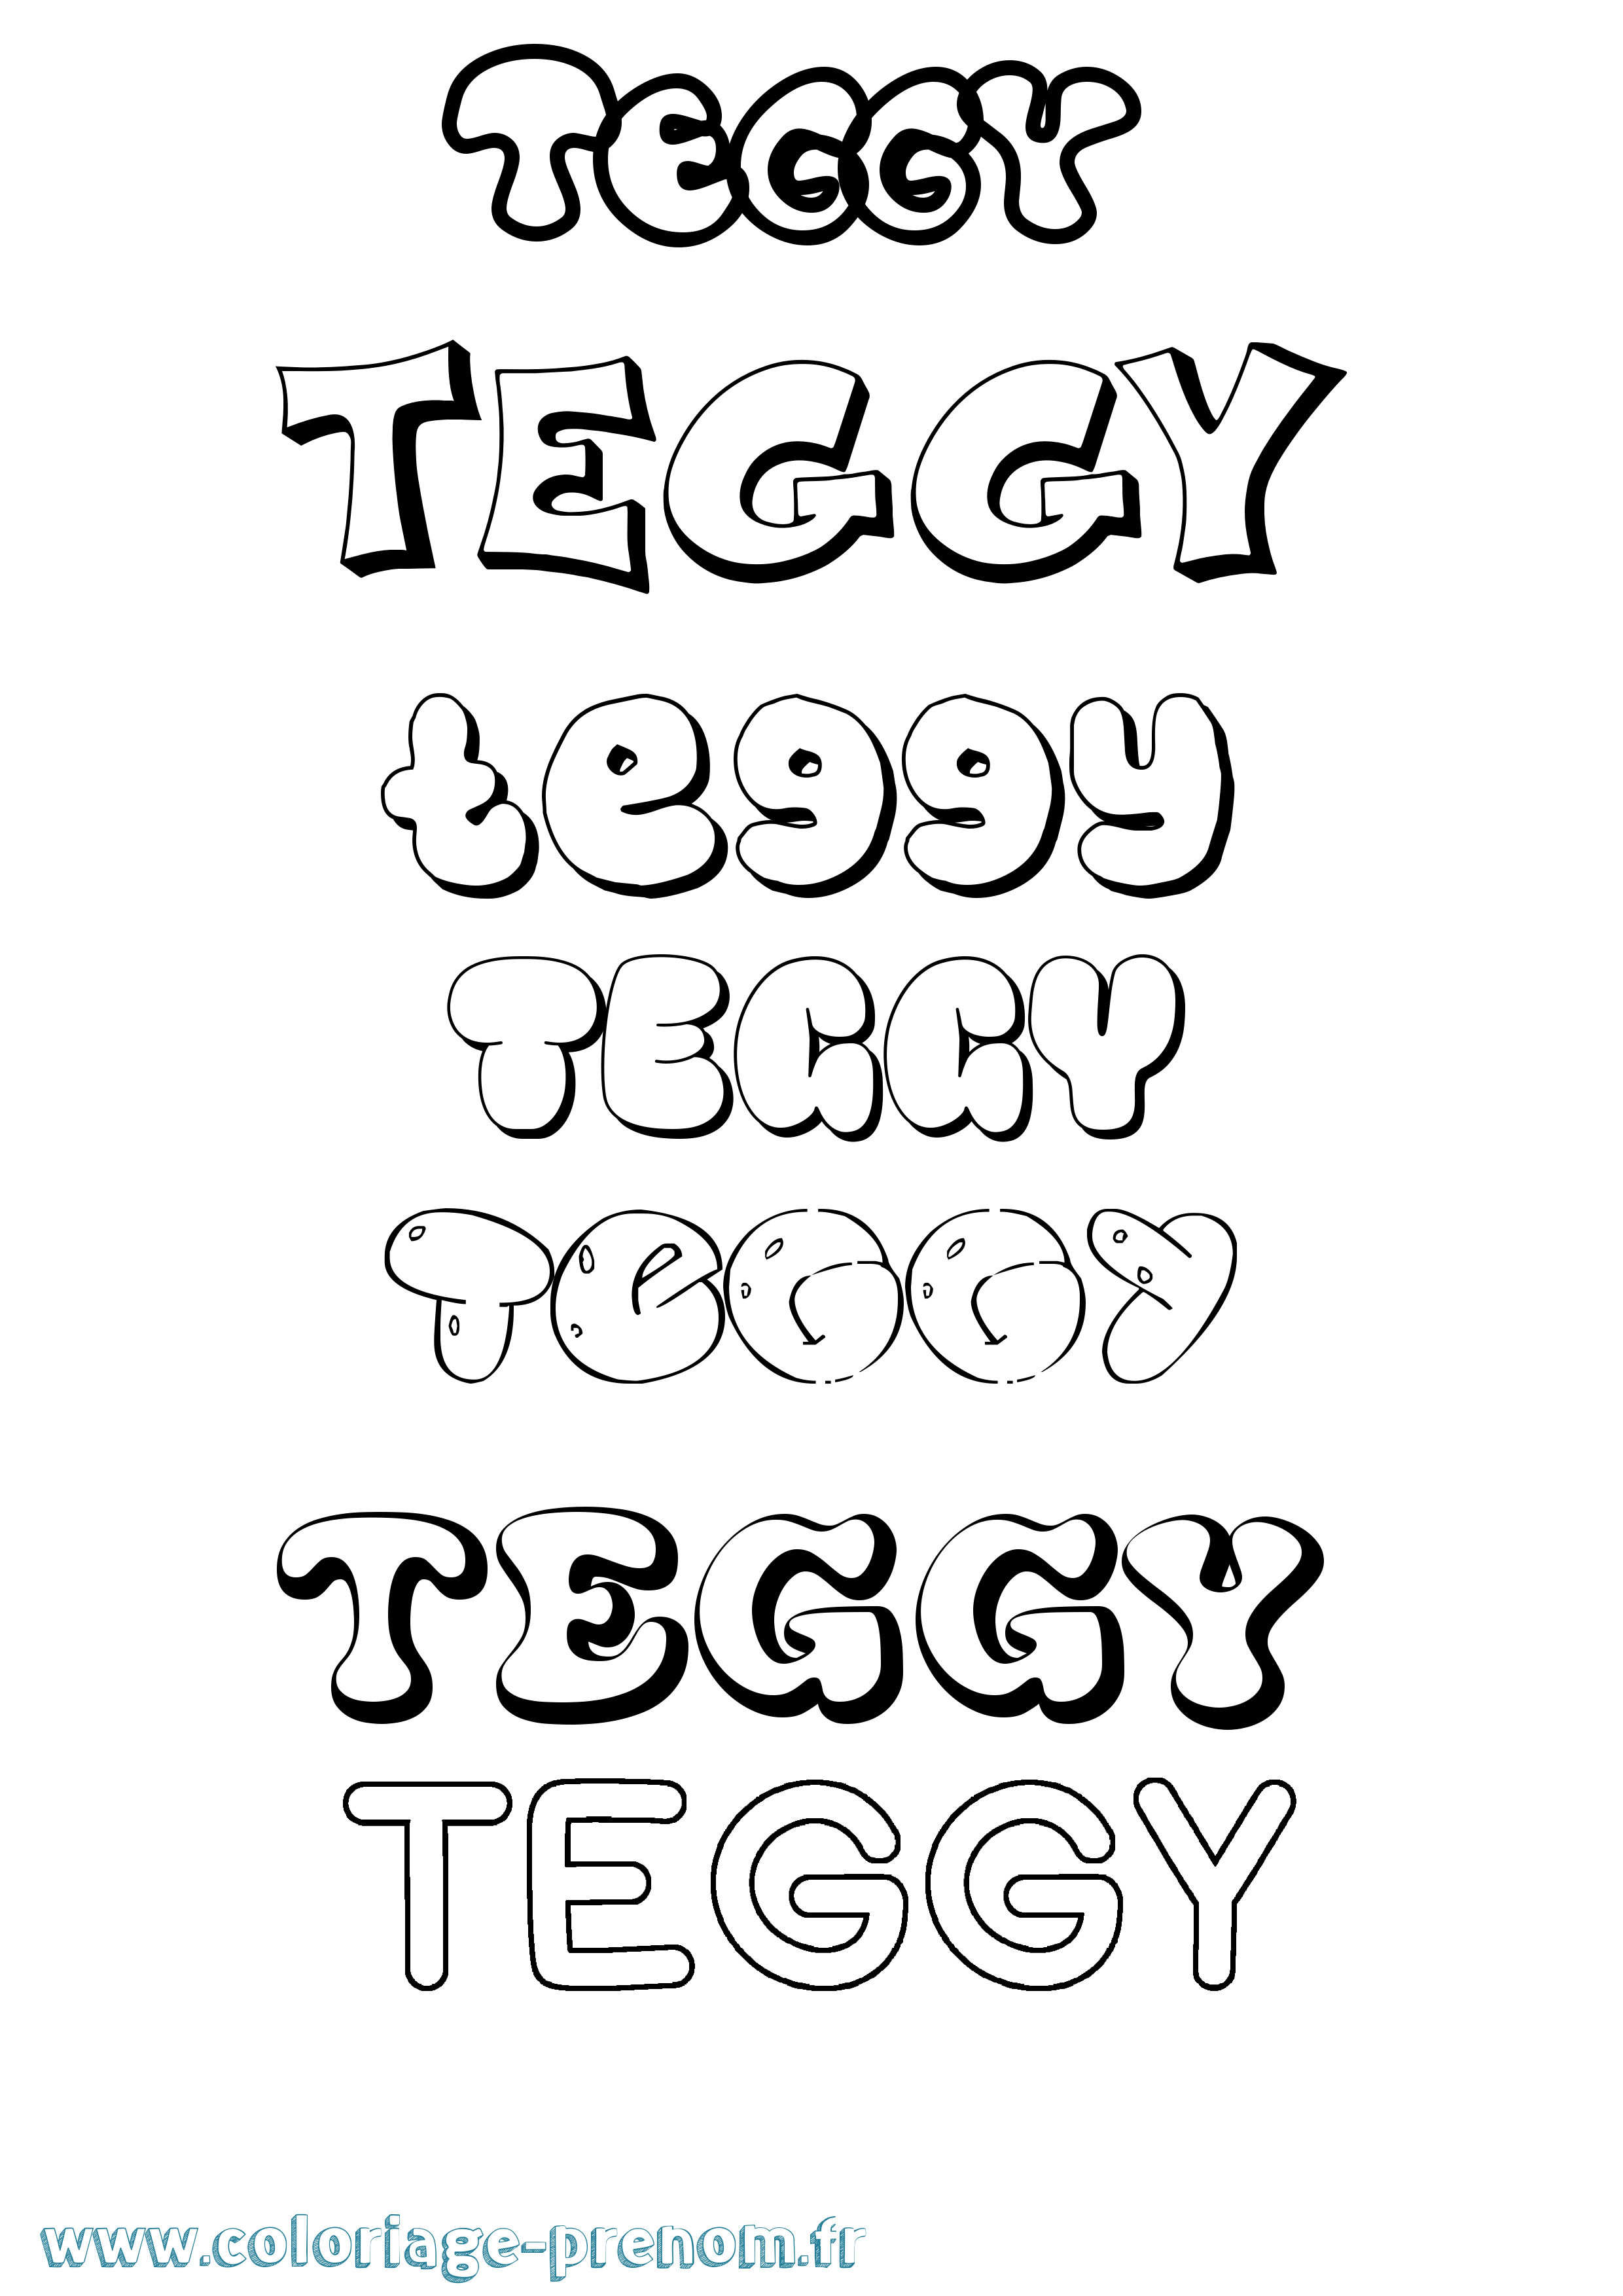 Coloriage prénom Teggy Bubble